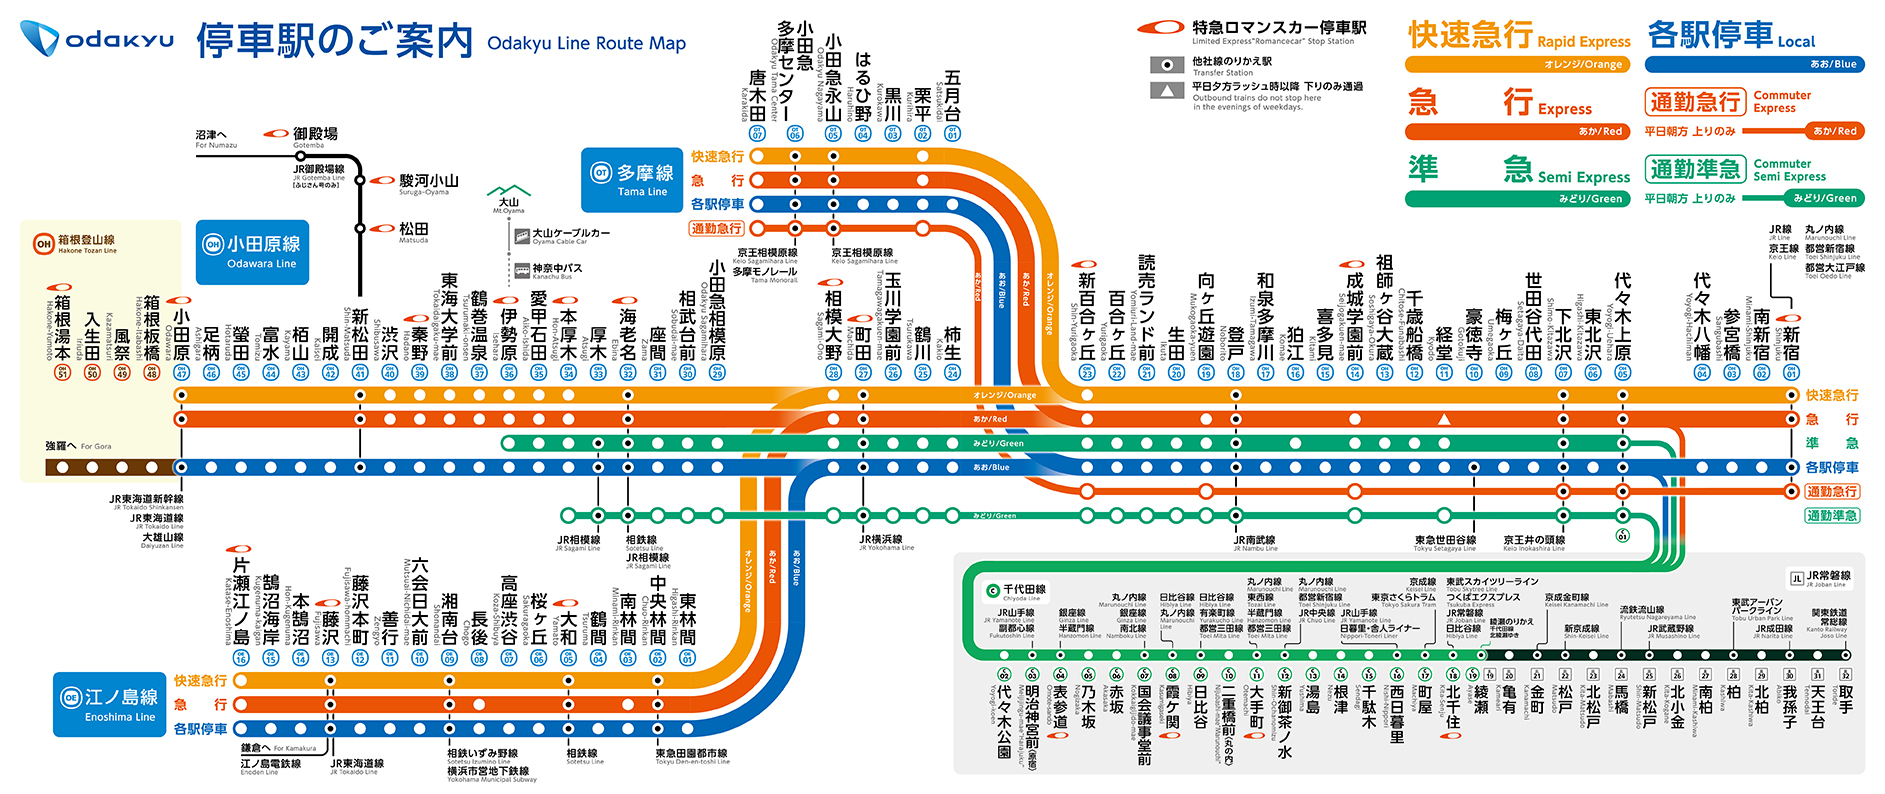 小田急電鉄の路線図はどこが変わったのか 1 3 Itmedia ビジネスオンライン